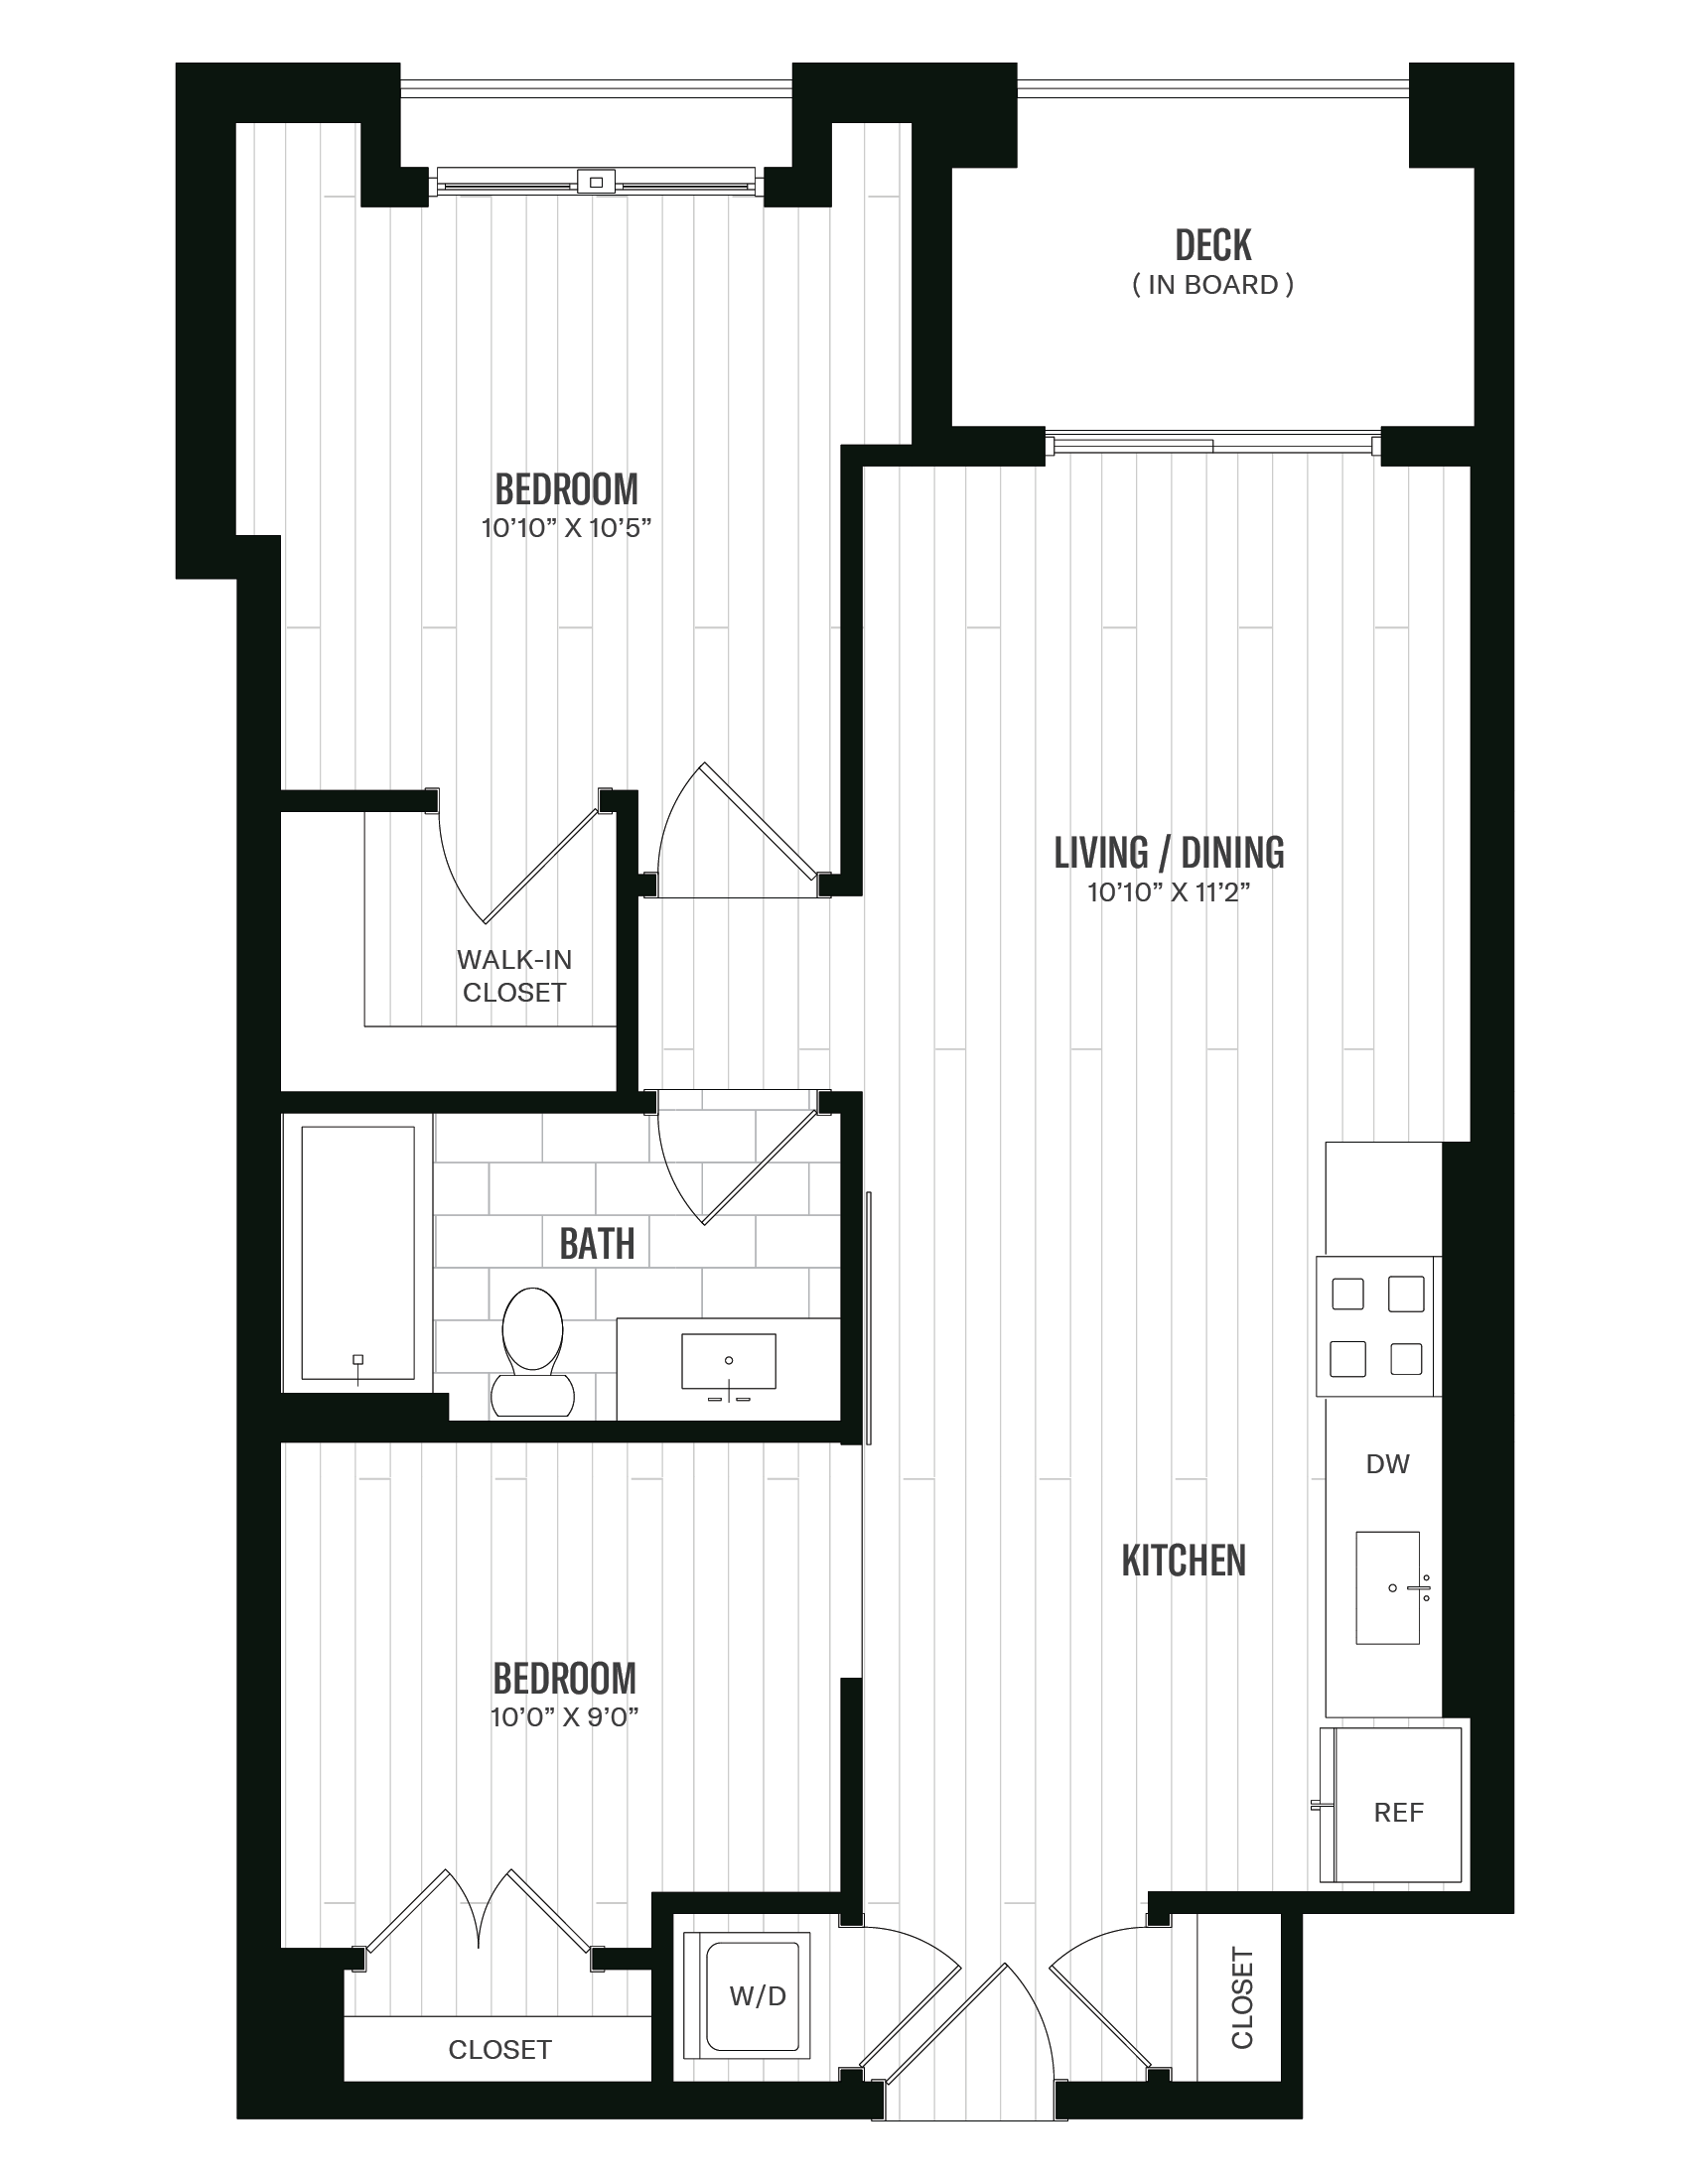 Floorplan image of unit 442